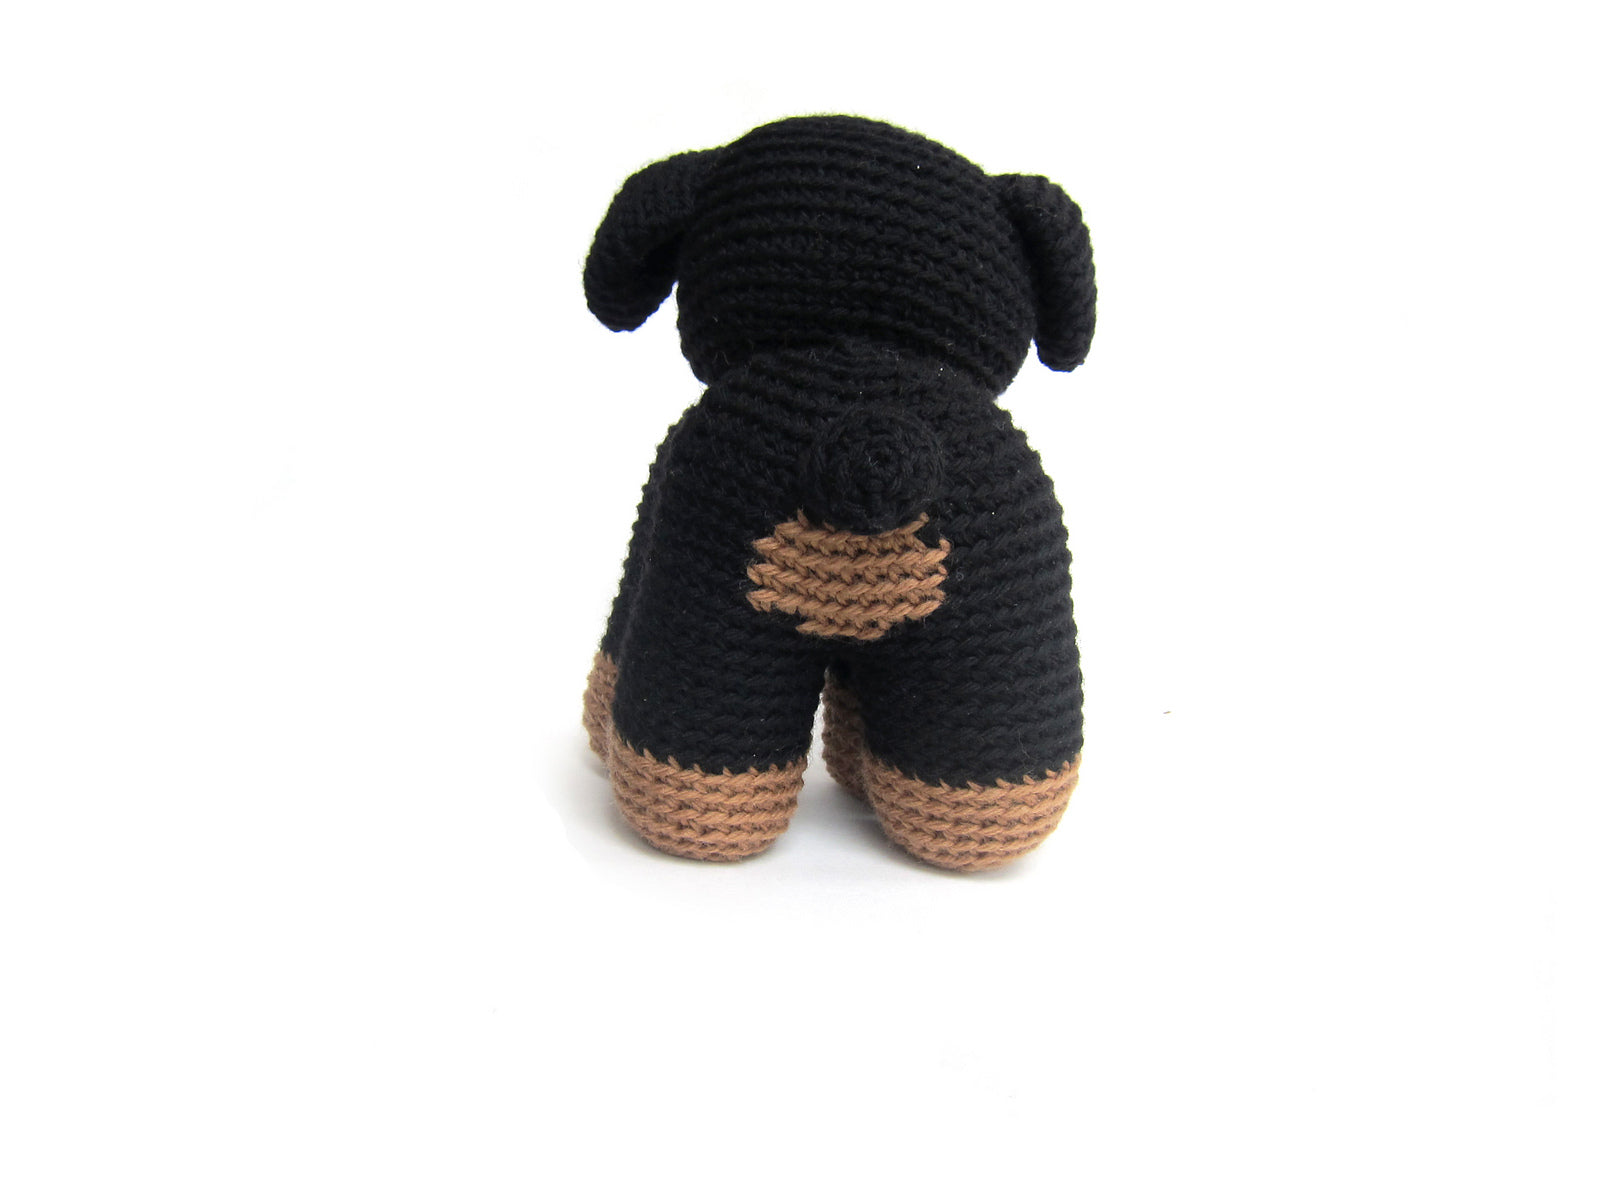 Ramona the Rottweiler Crochet Amigurumi Pattern